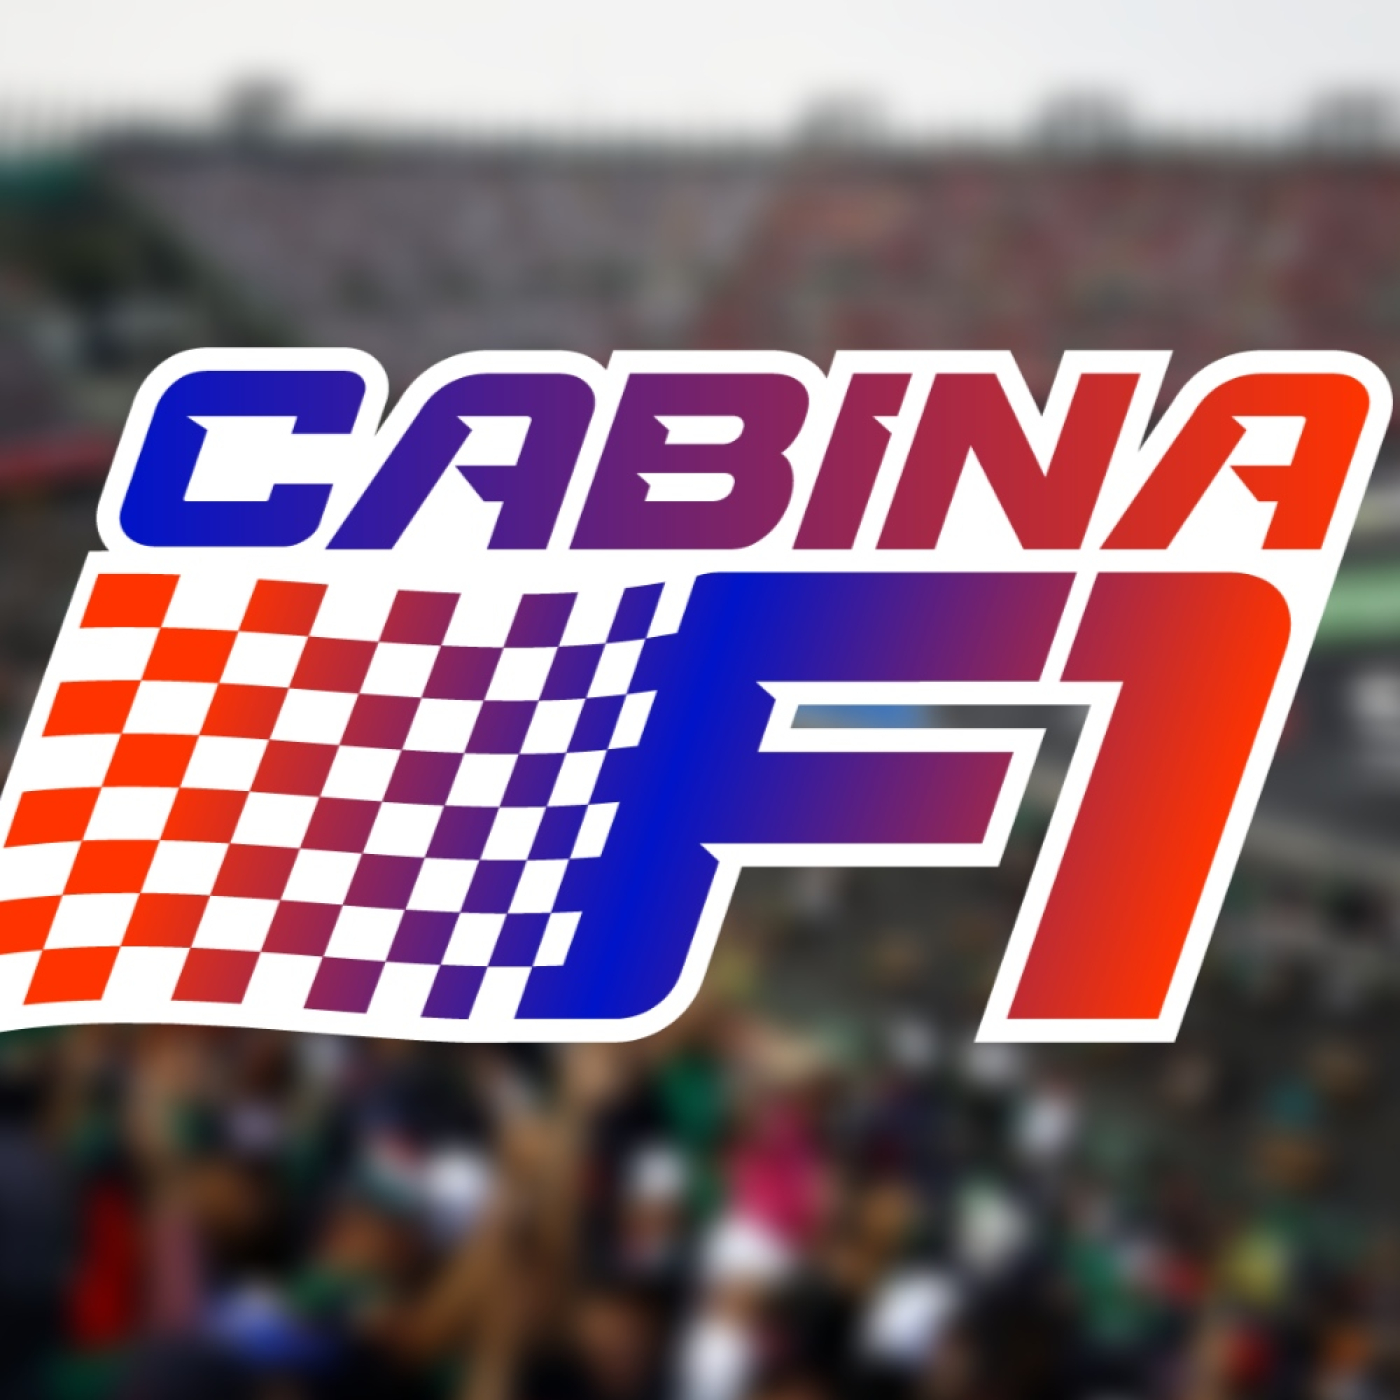 Regresa la confianza con Checo - Post GP de Austria - Cabina F1